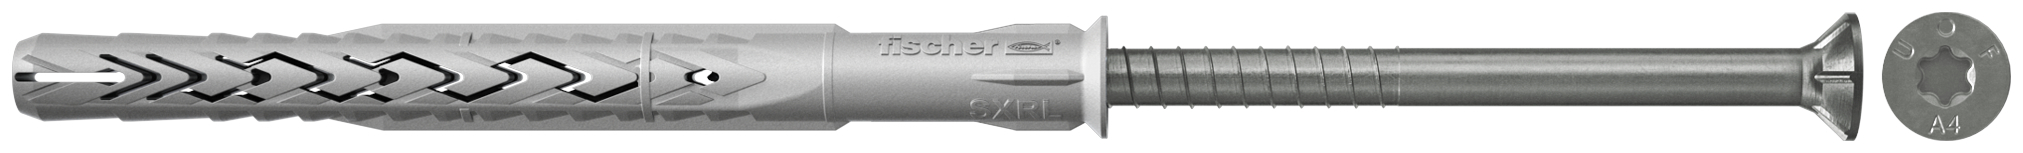 fischer Tasselli prolungati SXRL 8x60 T A4 (1 Pz.) Tassello prolungato in nylon con marcatura CE con vite premontata in acciaio inox A4, T.S.P. impronta torx fie3163